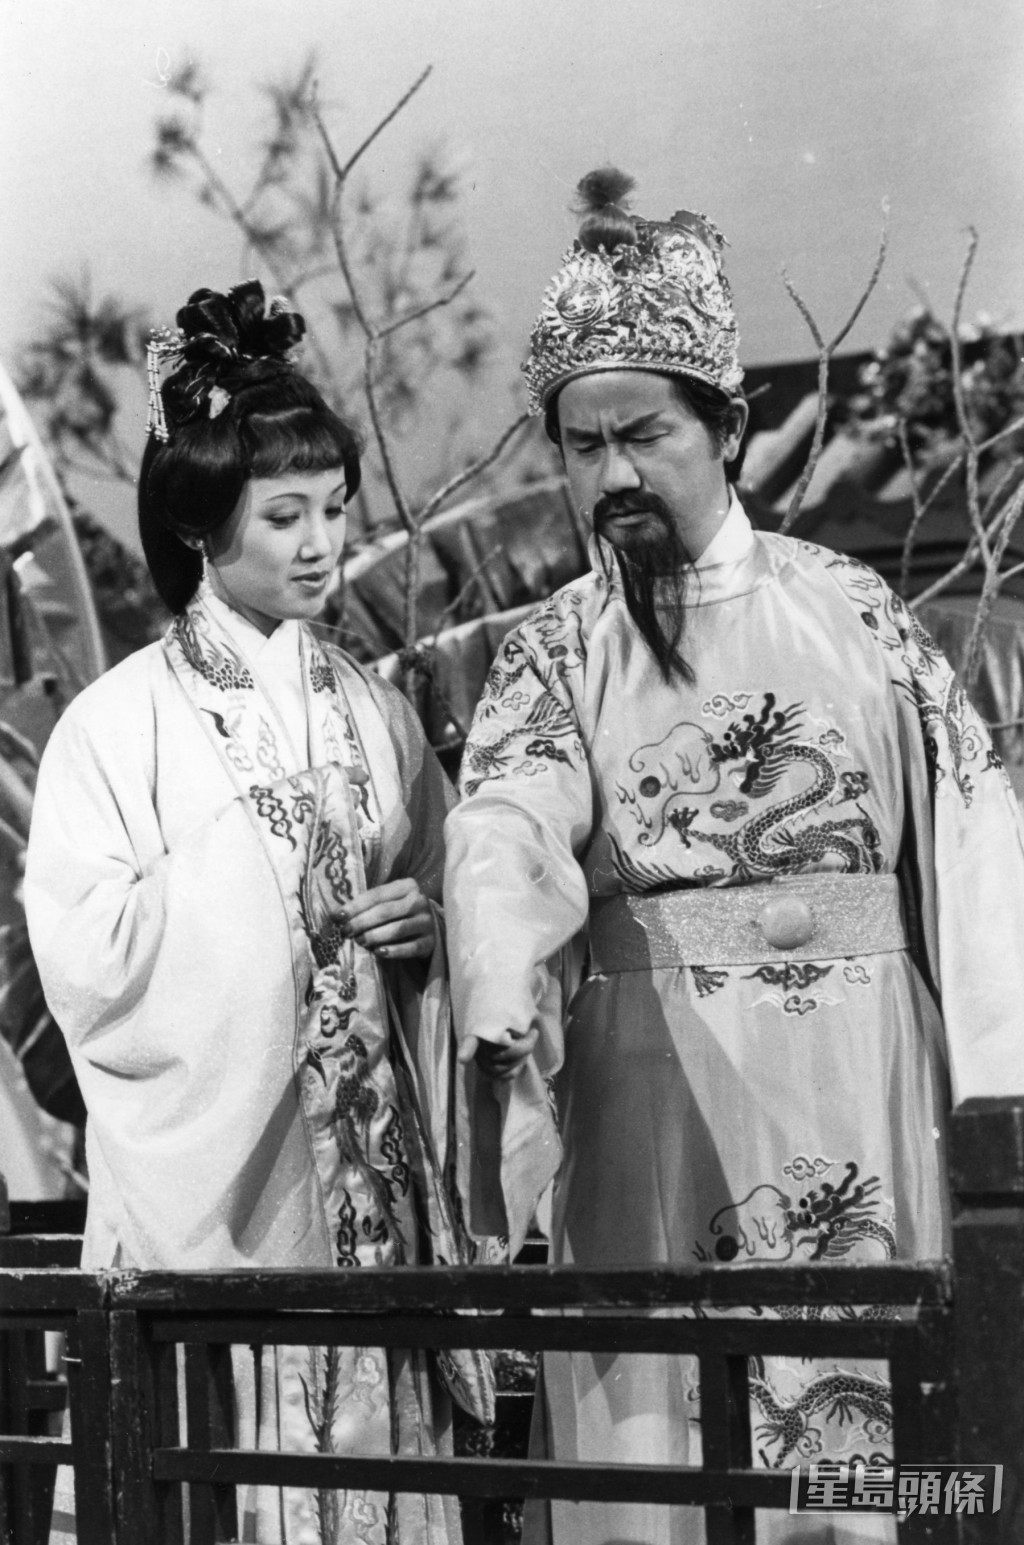 盧大偉與蕭亮1975年轉投TVB，曾演出不少劇集及電影。